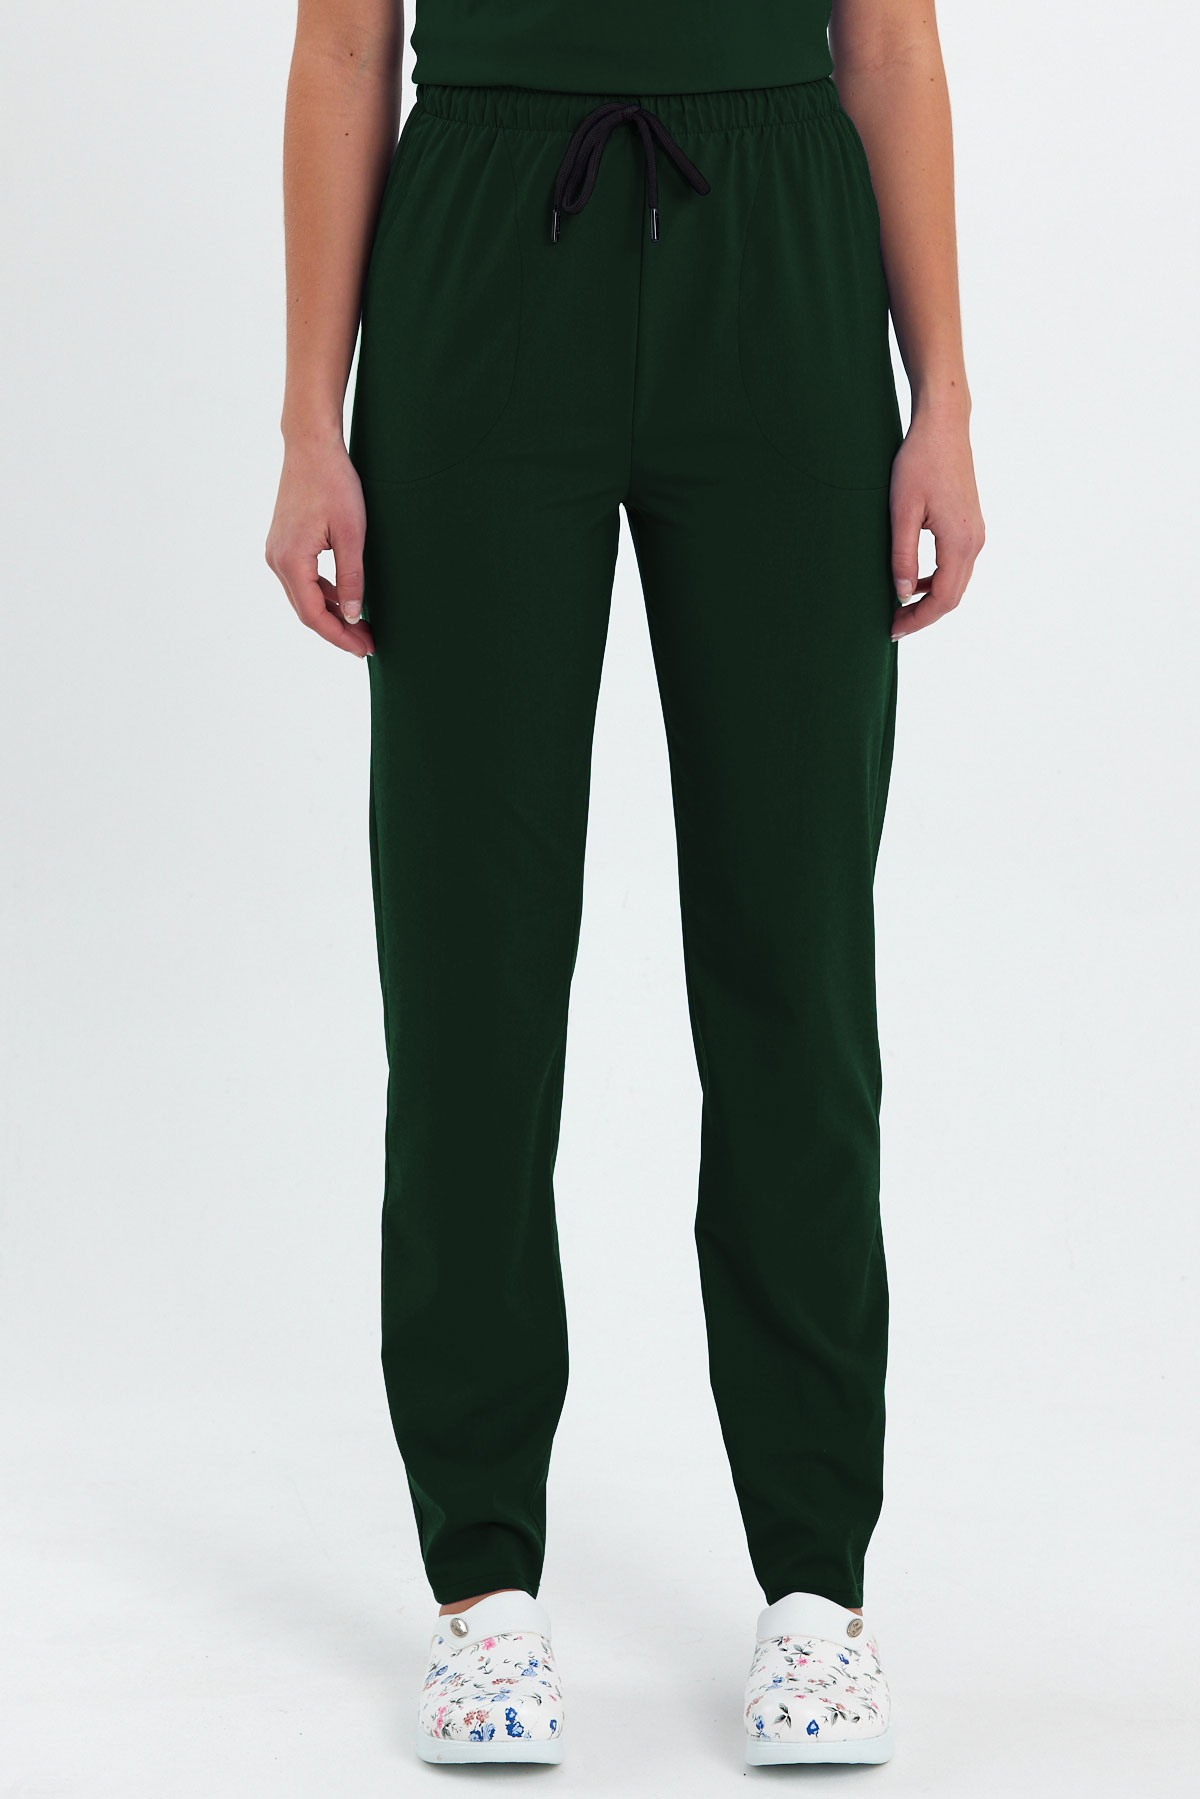 LAME 1009 Basic Likralı Avcı Yeşili Scrubs, Hemşire Forması Klasik Paça Pantolon